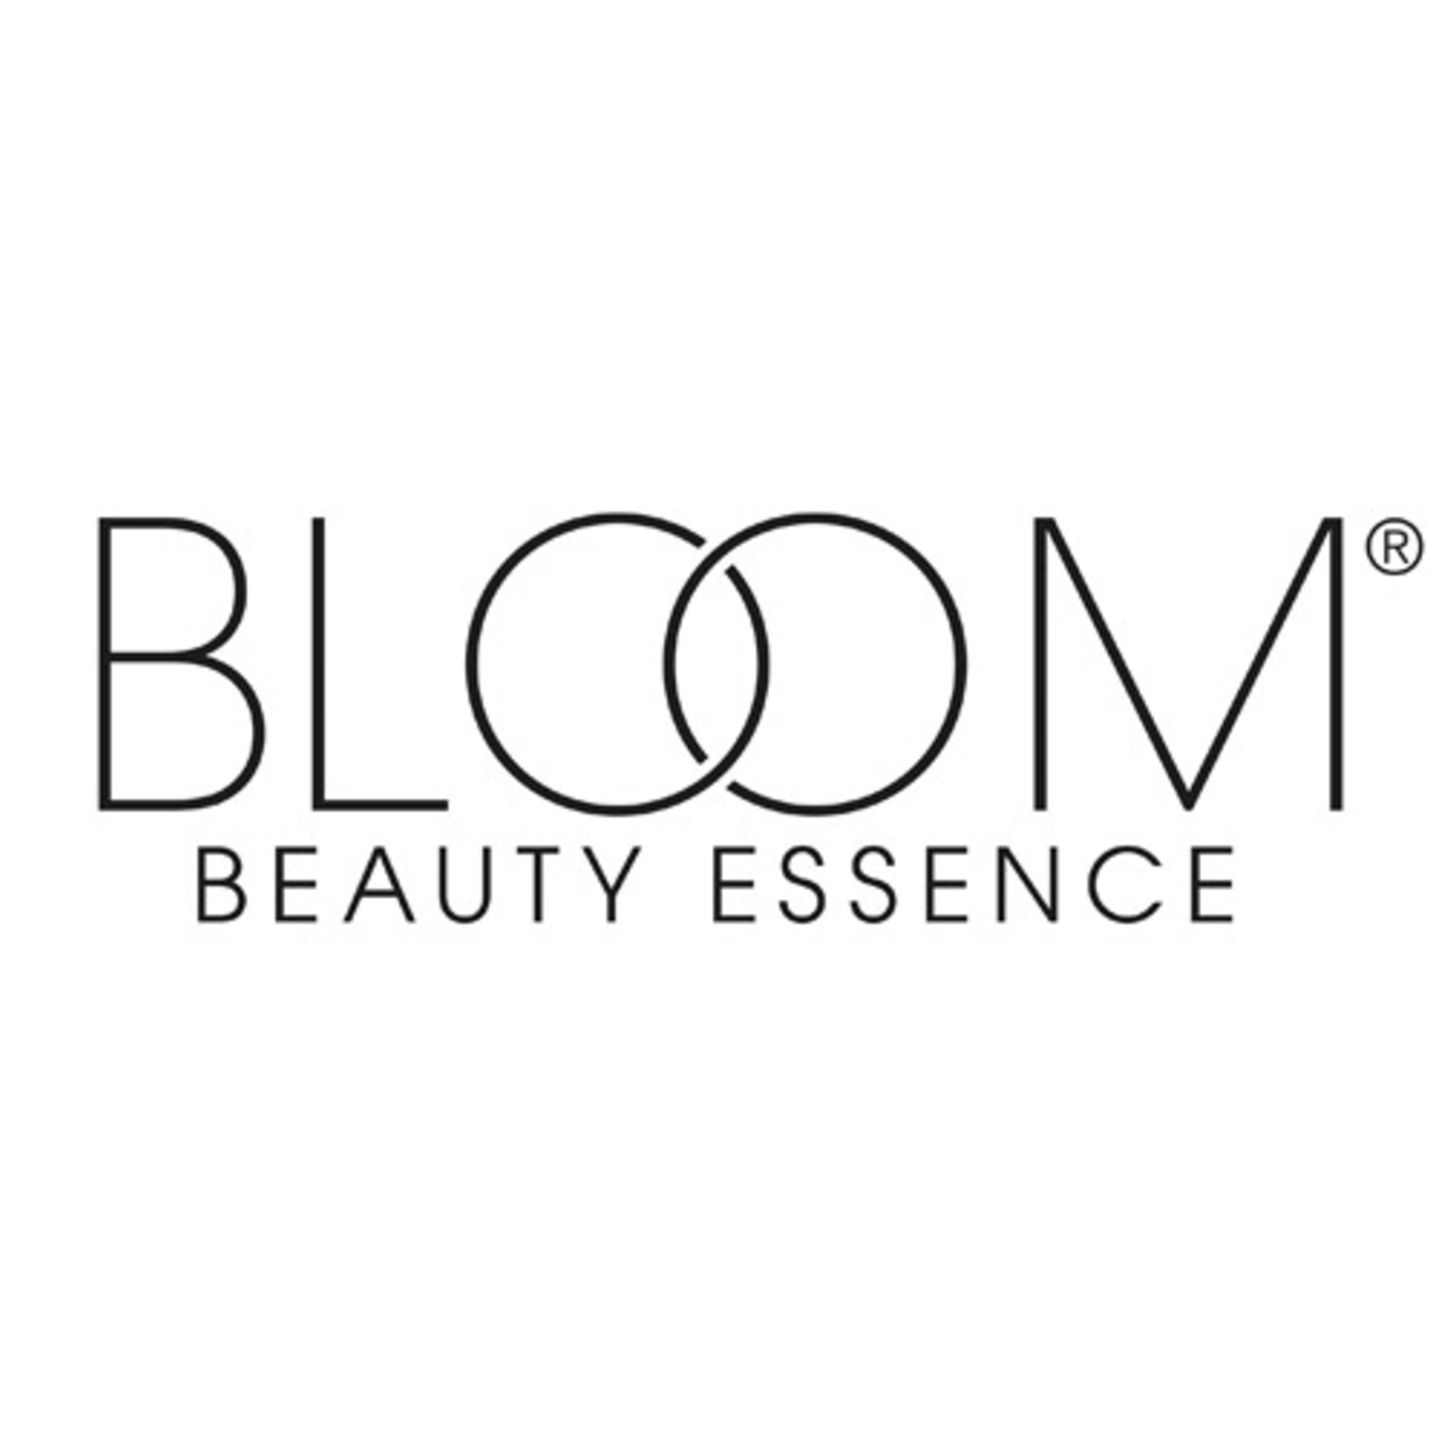 BRIGITTE Style Day: Bloom Beauty Essence